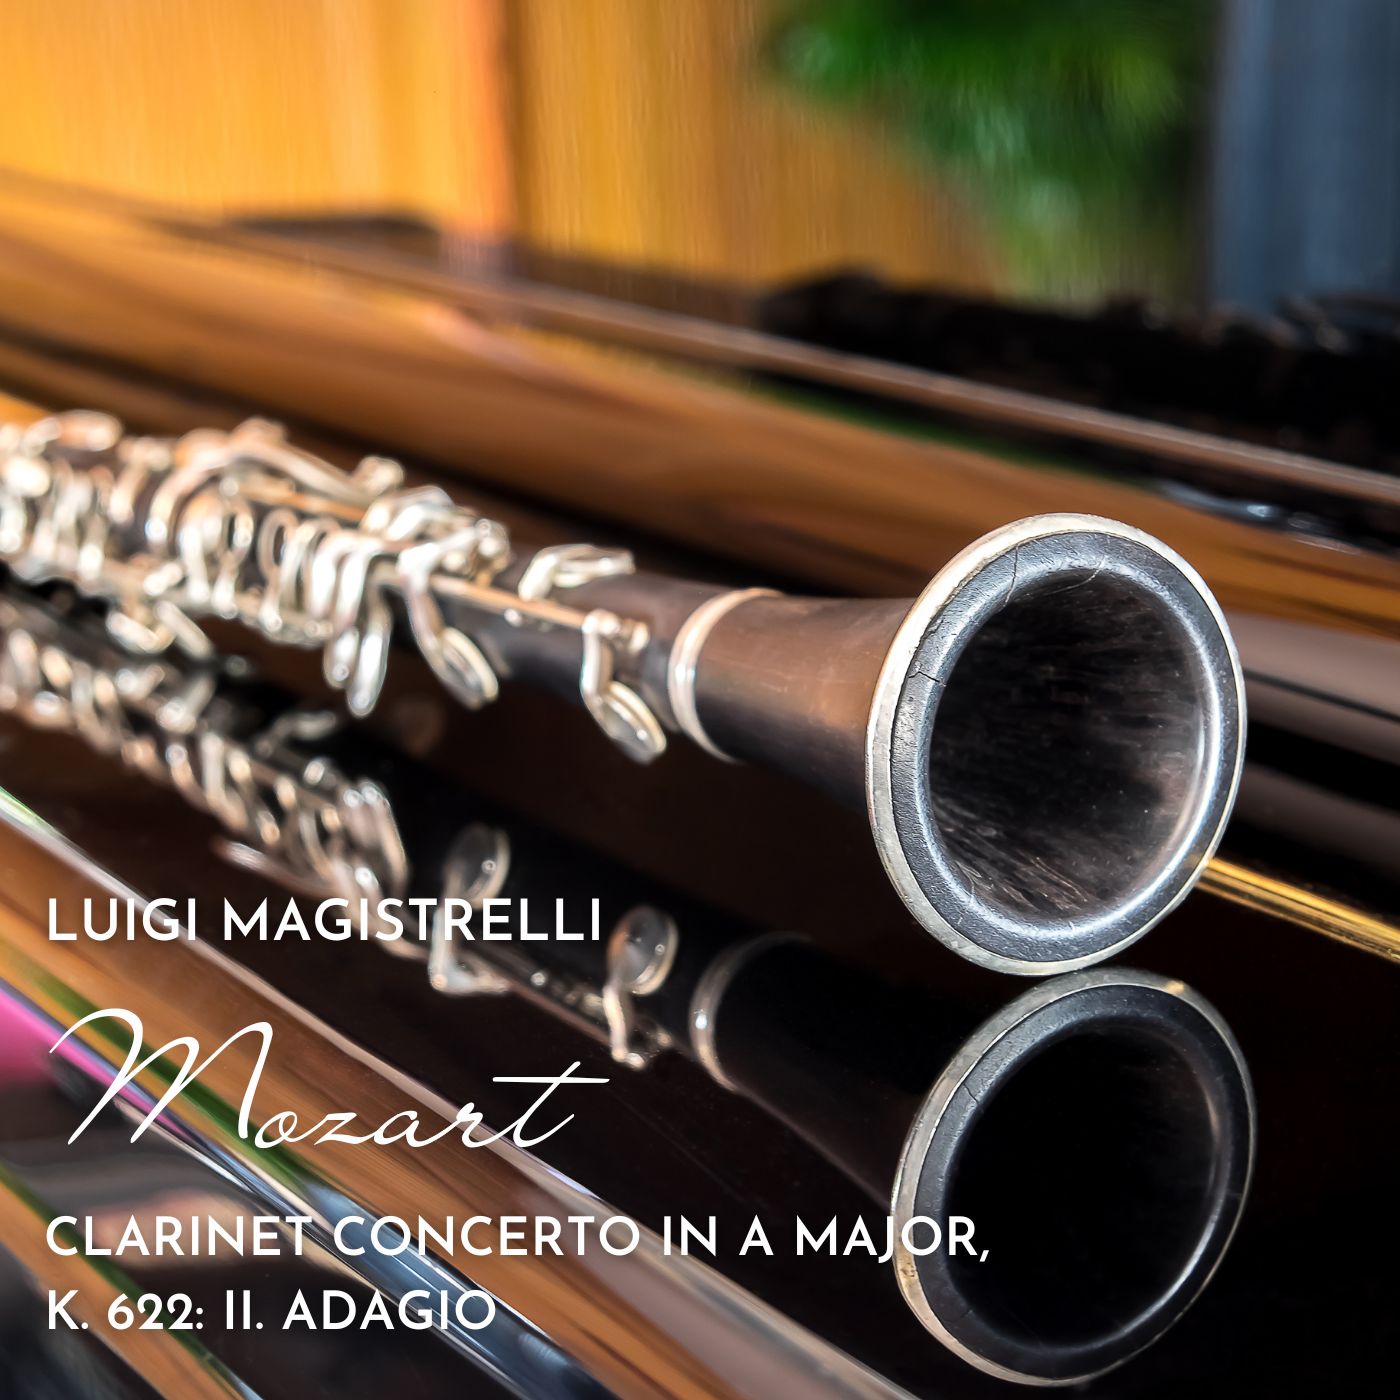 Clarinet Concerto in A major, K. 622: II. Adagio